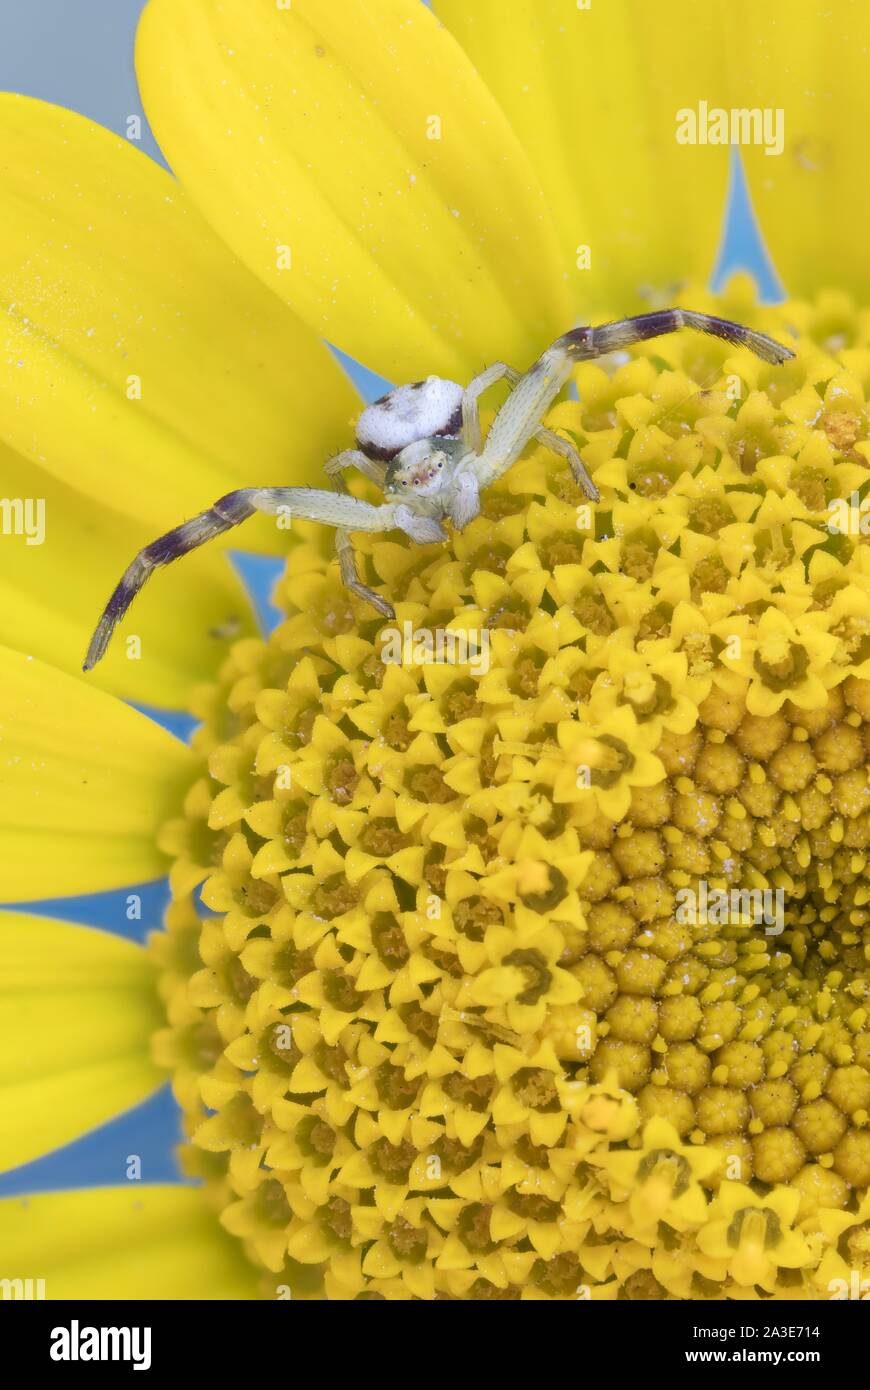 Houghton (Misumena vatia araignée crabe), sur fleur de golden marguerite (Anthemis tinctoria), Allemagne Banque D'Images